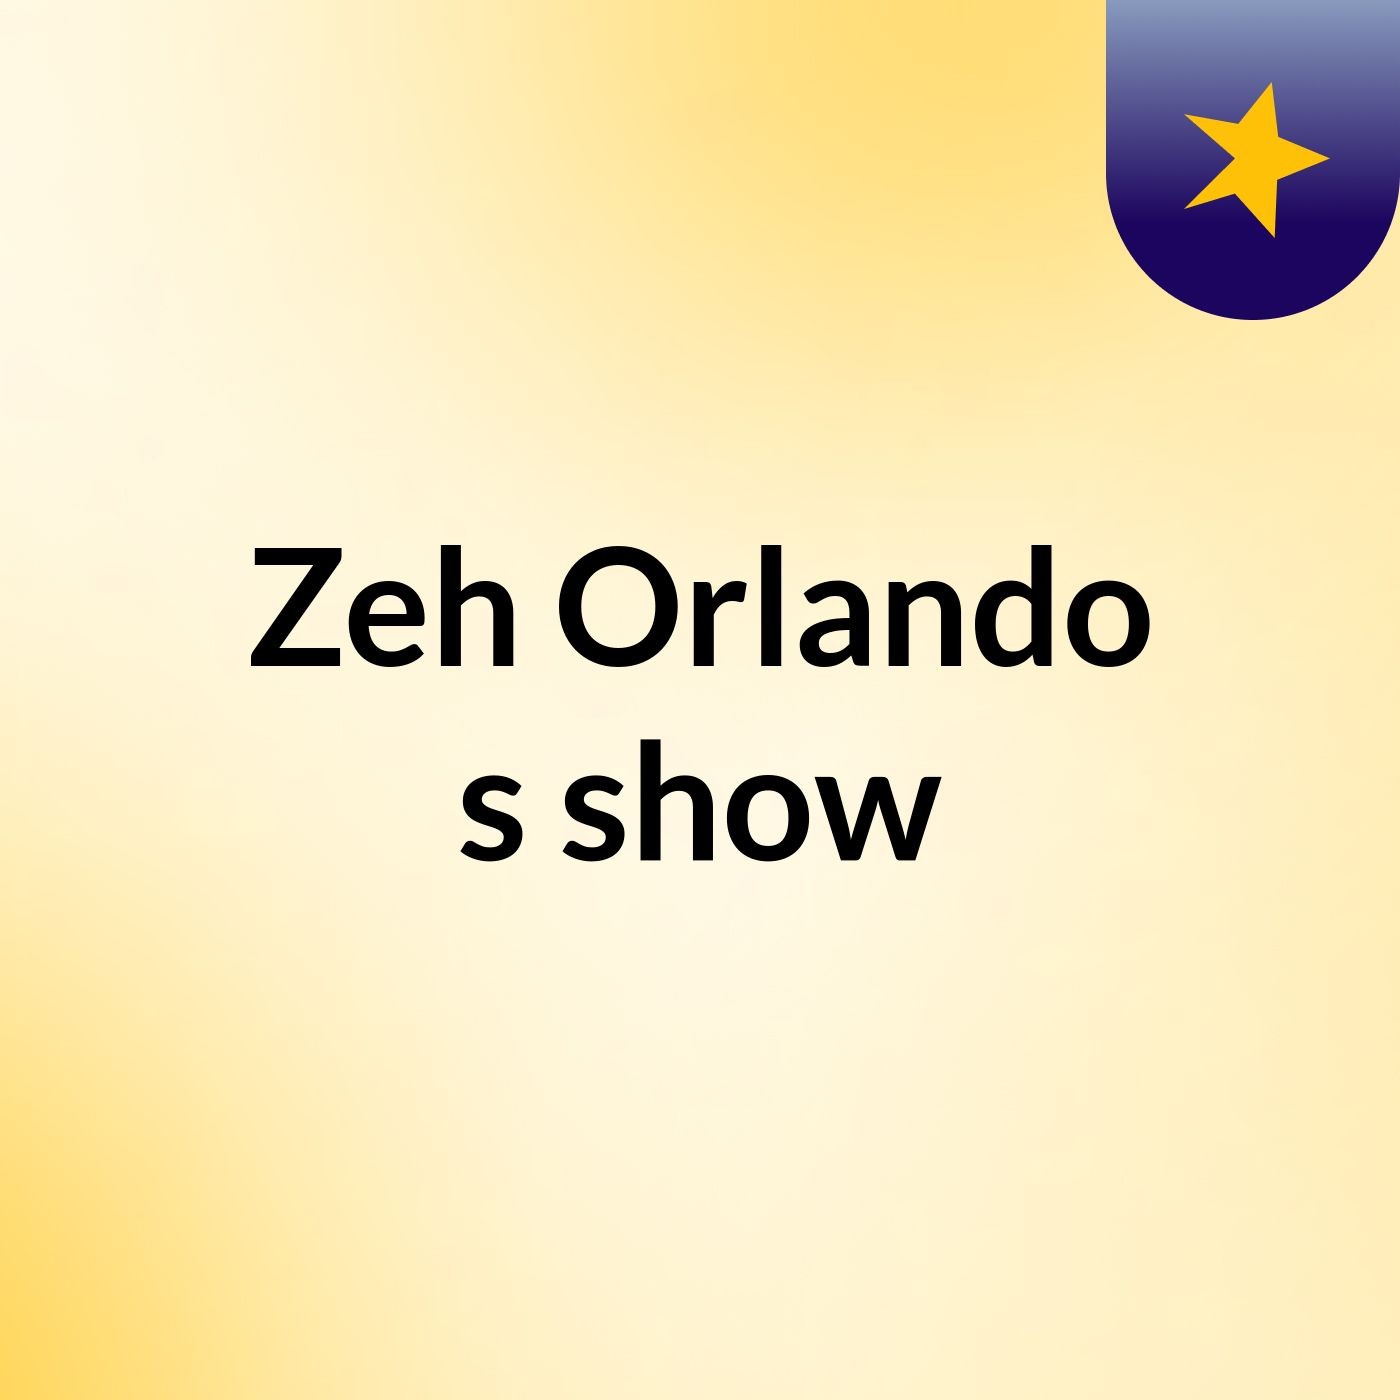 Zeh Orlando's show